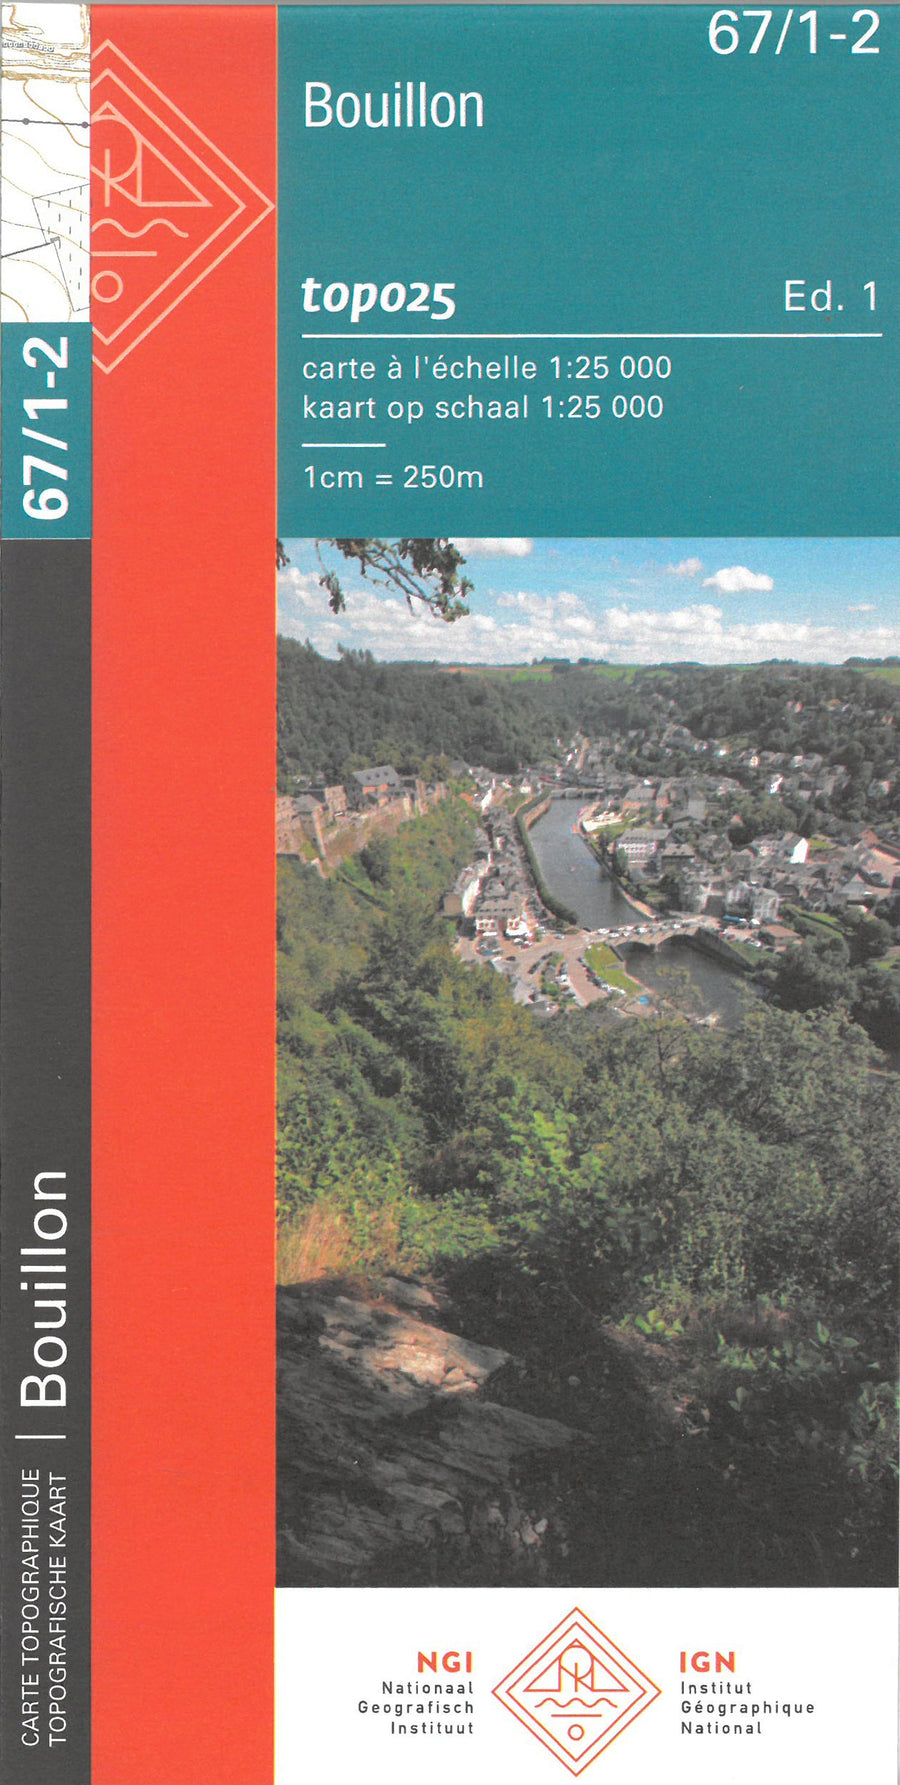 Carte topographique n° 67/1-2 - Bouillon (Belgique) | NGI topo 25 carte pliée IGN Belgique 